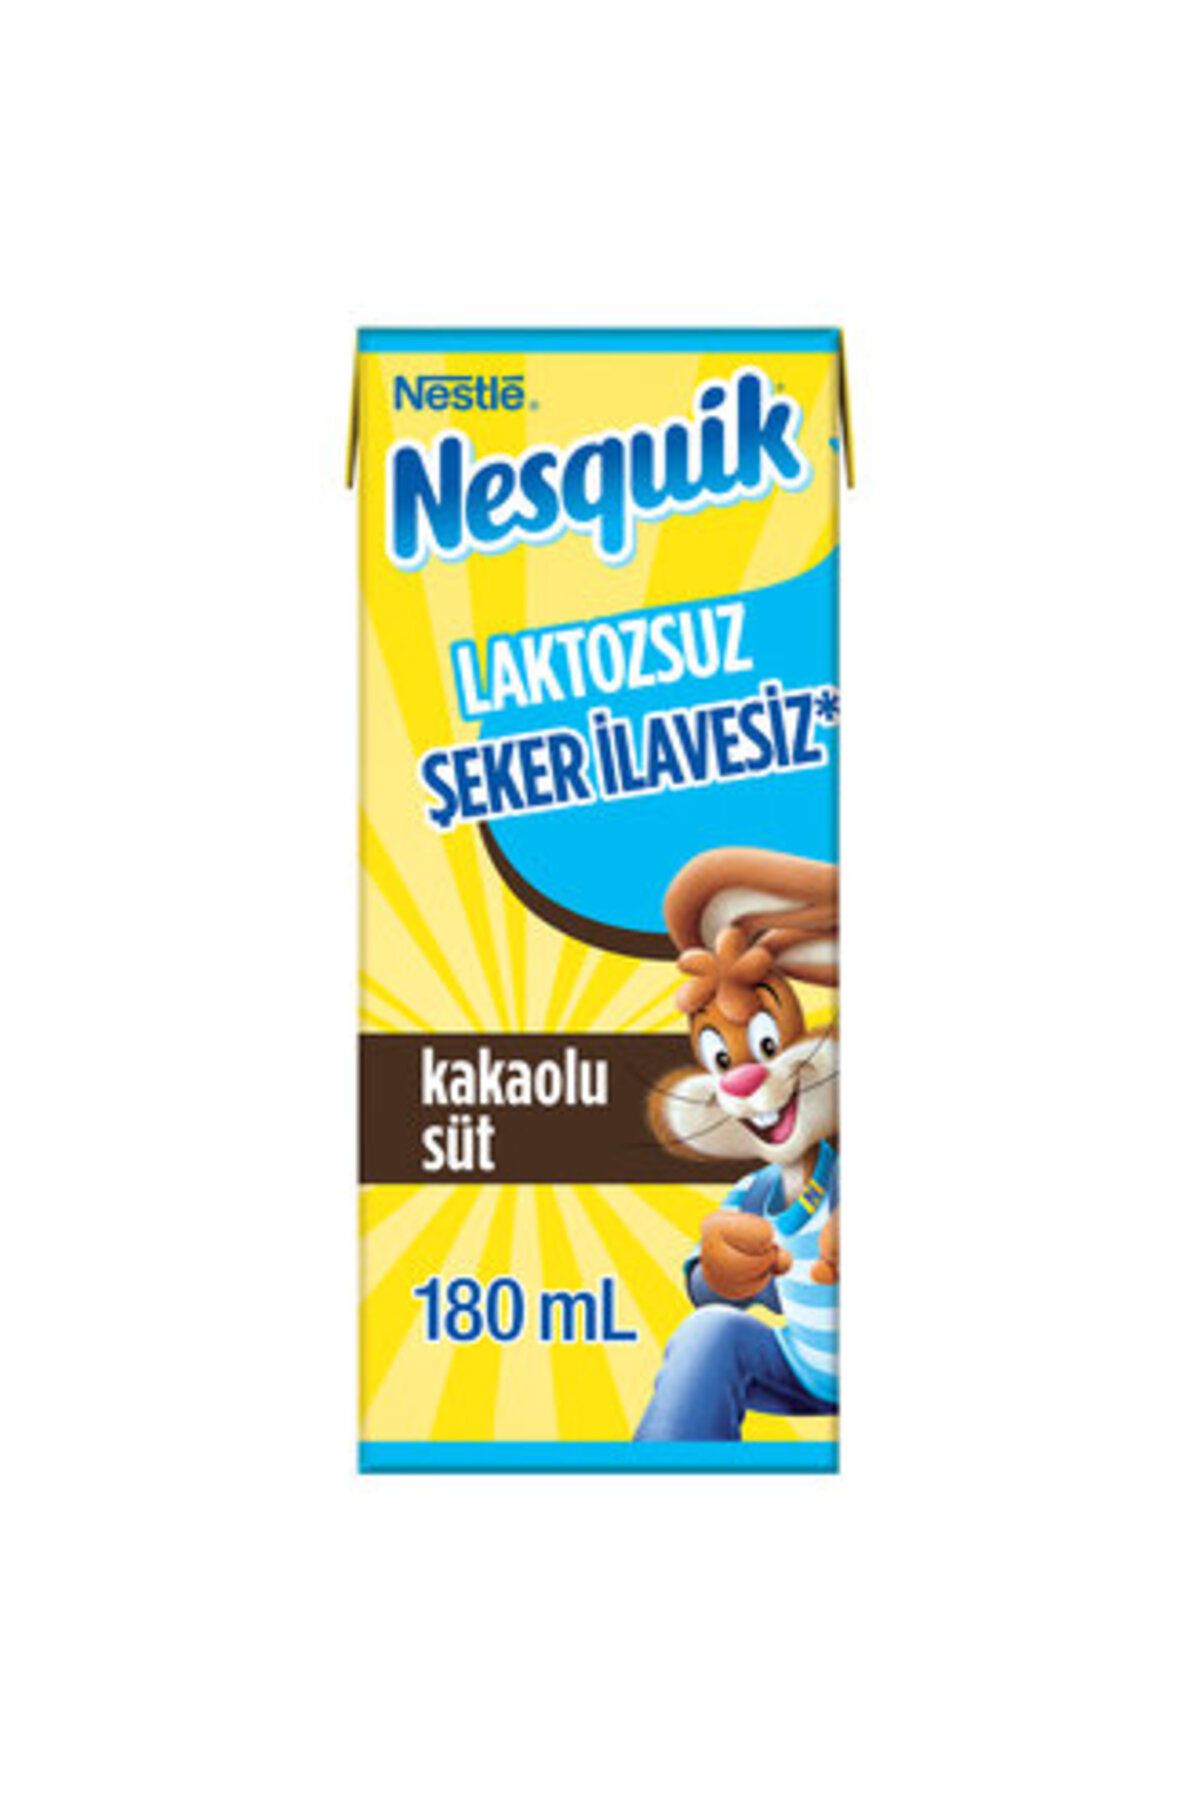 Nestle Nesquik Laktozsuz & Şeker İlavesiz Kakaolu Süt 180 Ml ( 12 ADET )